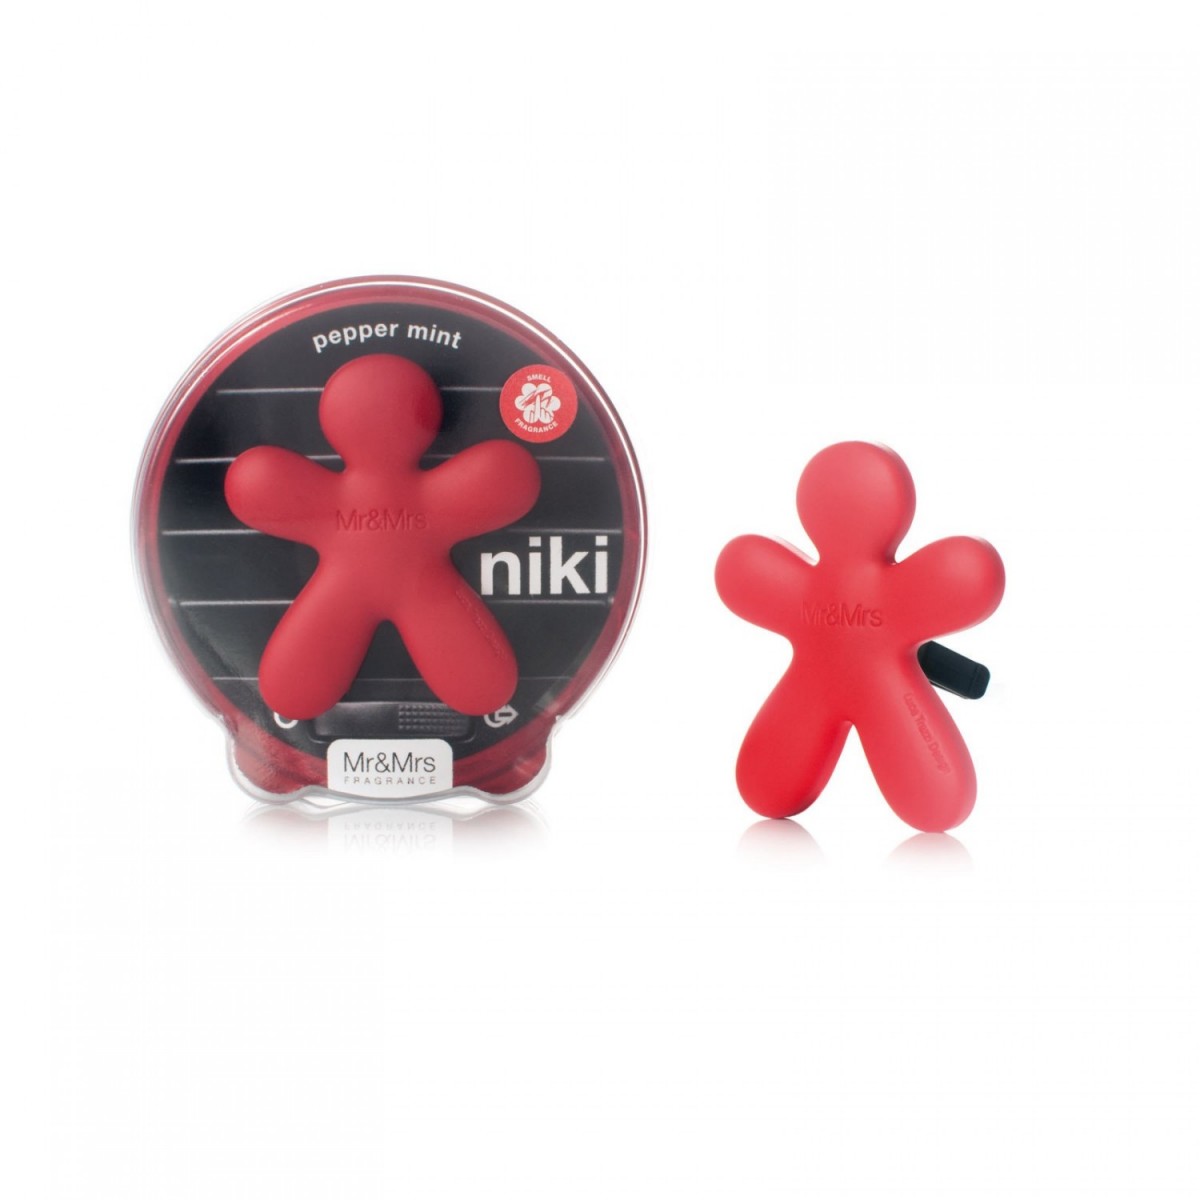 Mr&Mrs Fragrance Niki Pepper Mint 1ks